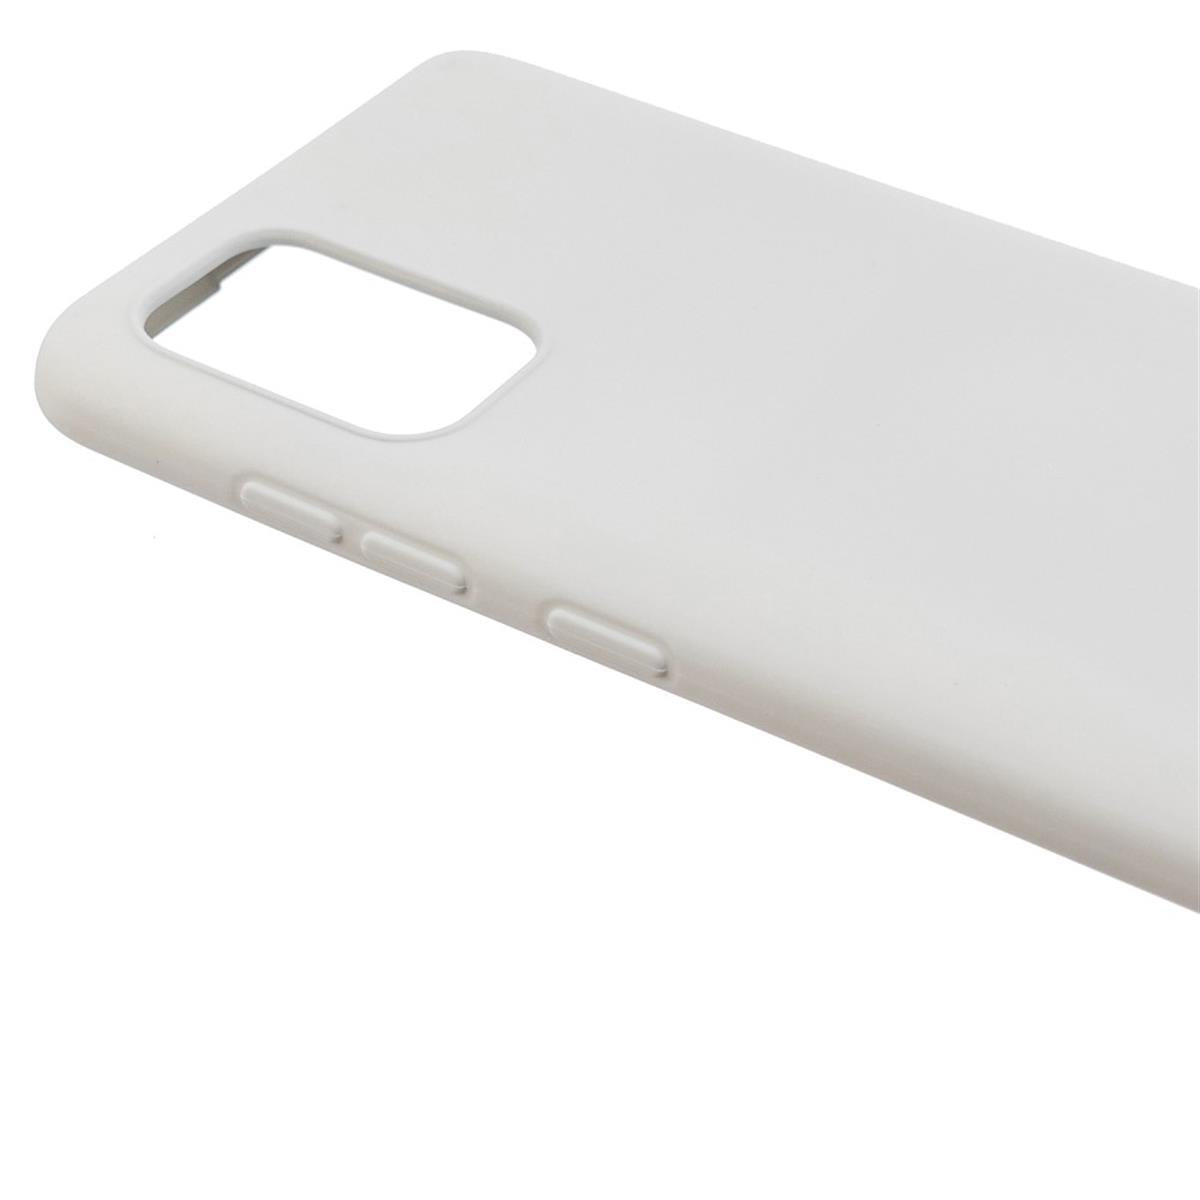 Hülle für Samsung Galaxy Note10 Lite Handyhülle Silikon Case Cover Matt Weiß